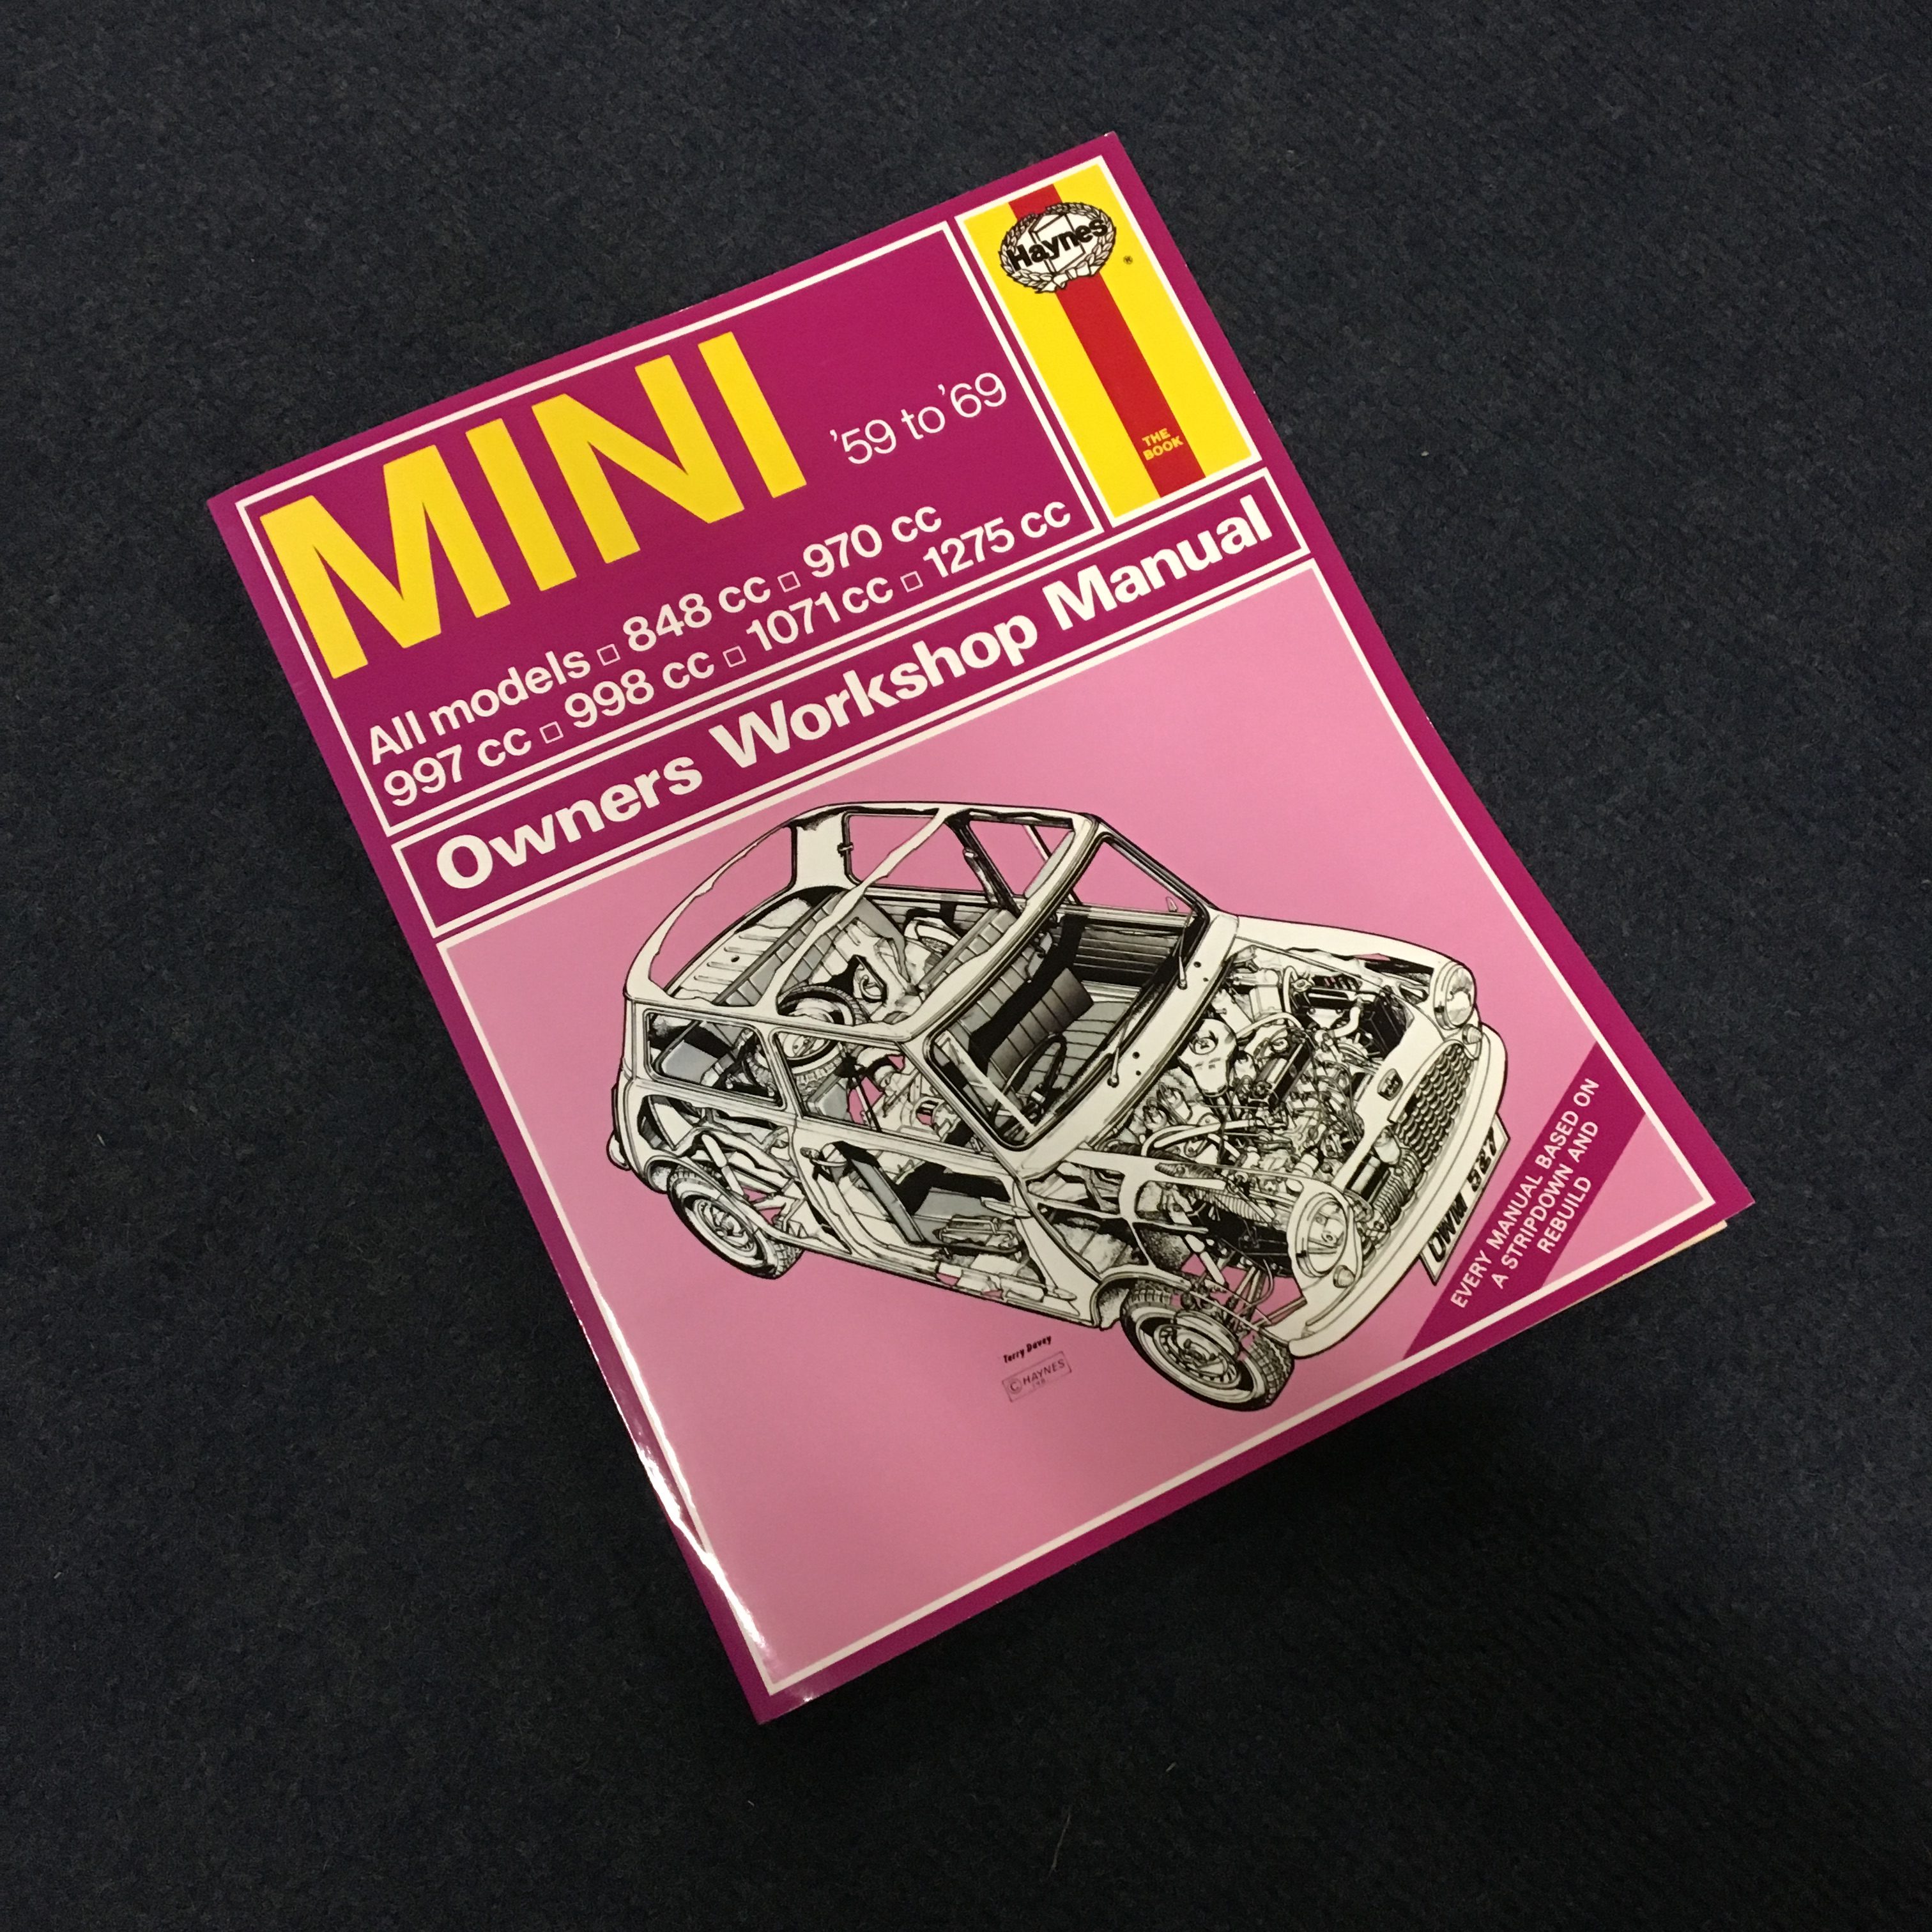 Mini Cooper S Haynes Manual